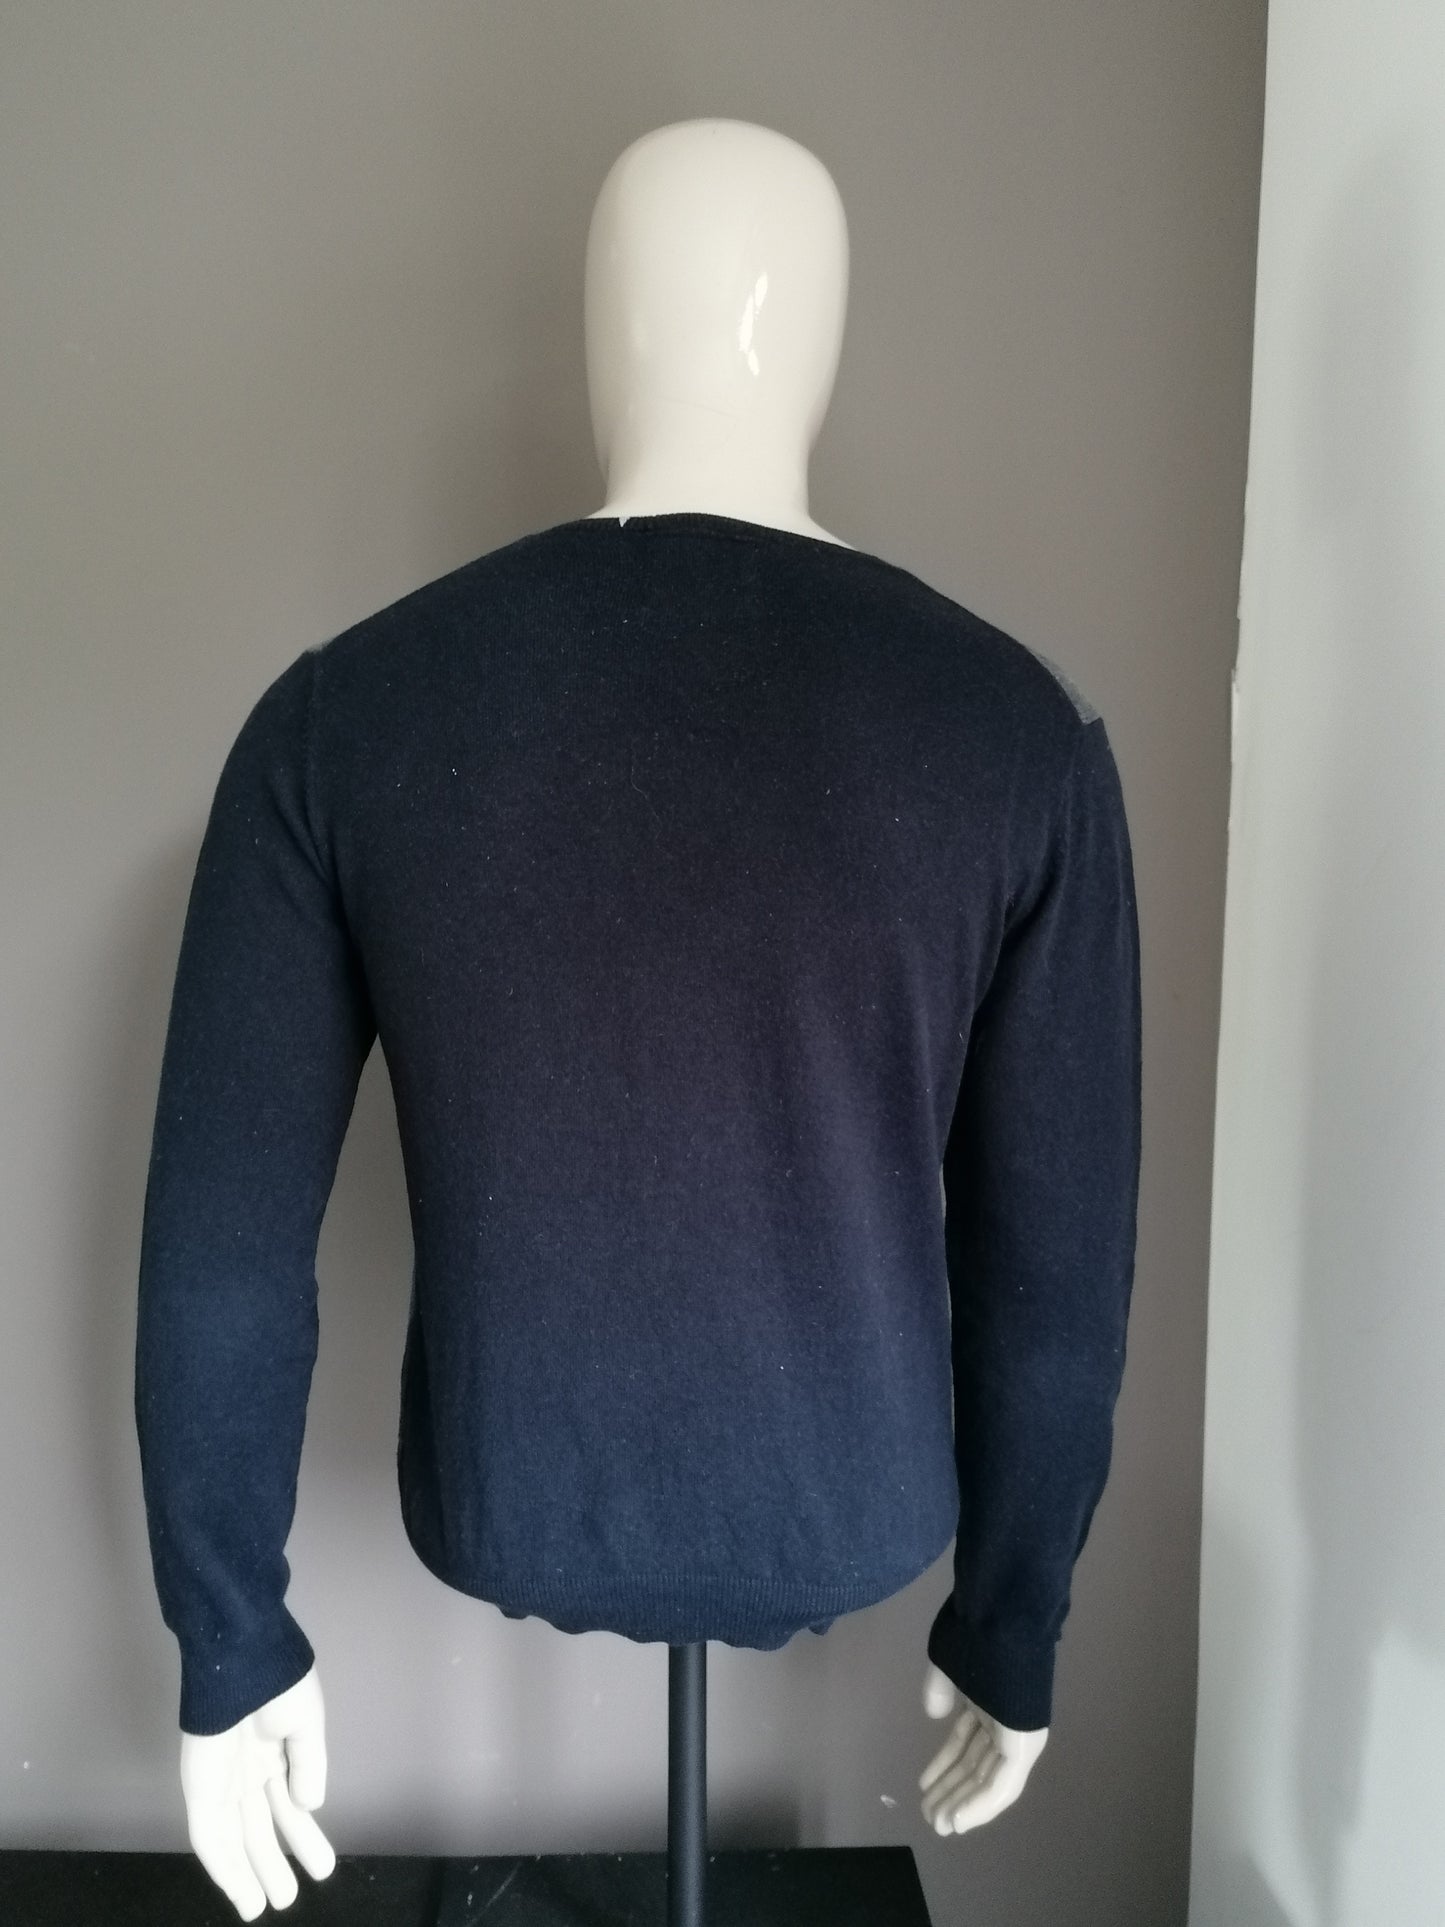 Suéter de Argyle de Cashmere Sun68 con cuello en V. Gris azulado. Talla M